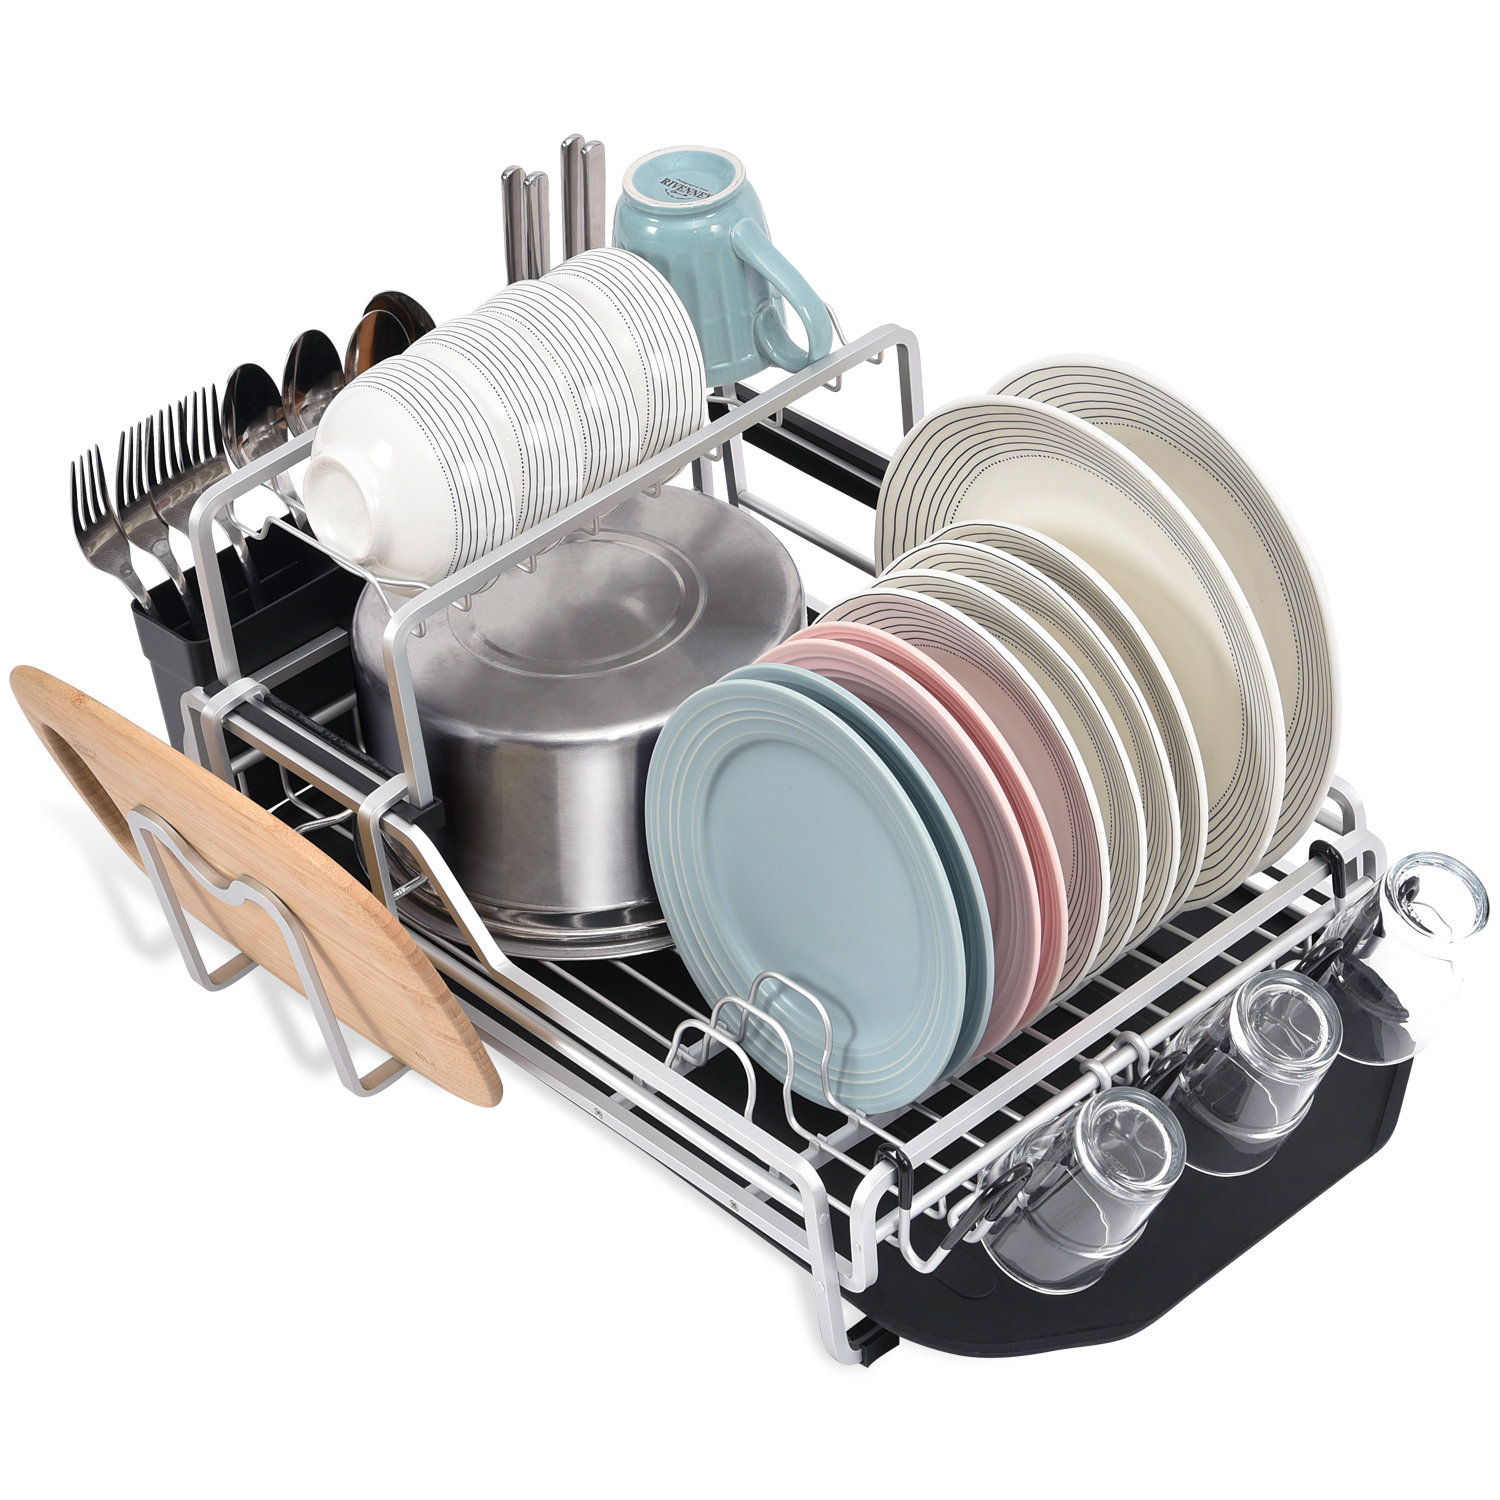 KINGRACK Aluminum Dish Drying Rack,Large Dish Rack and Drain Board  Set,Kitchen Dish Rack